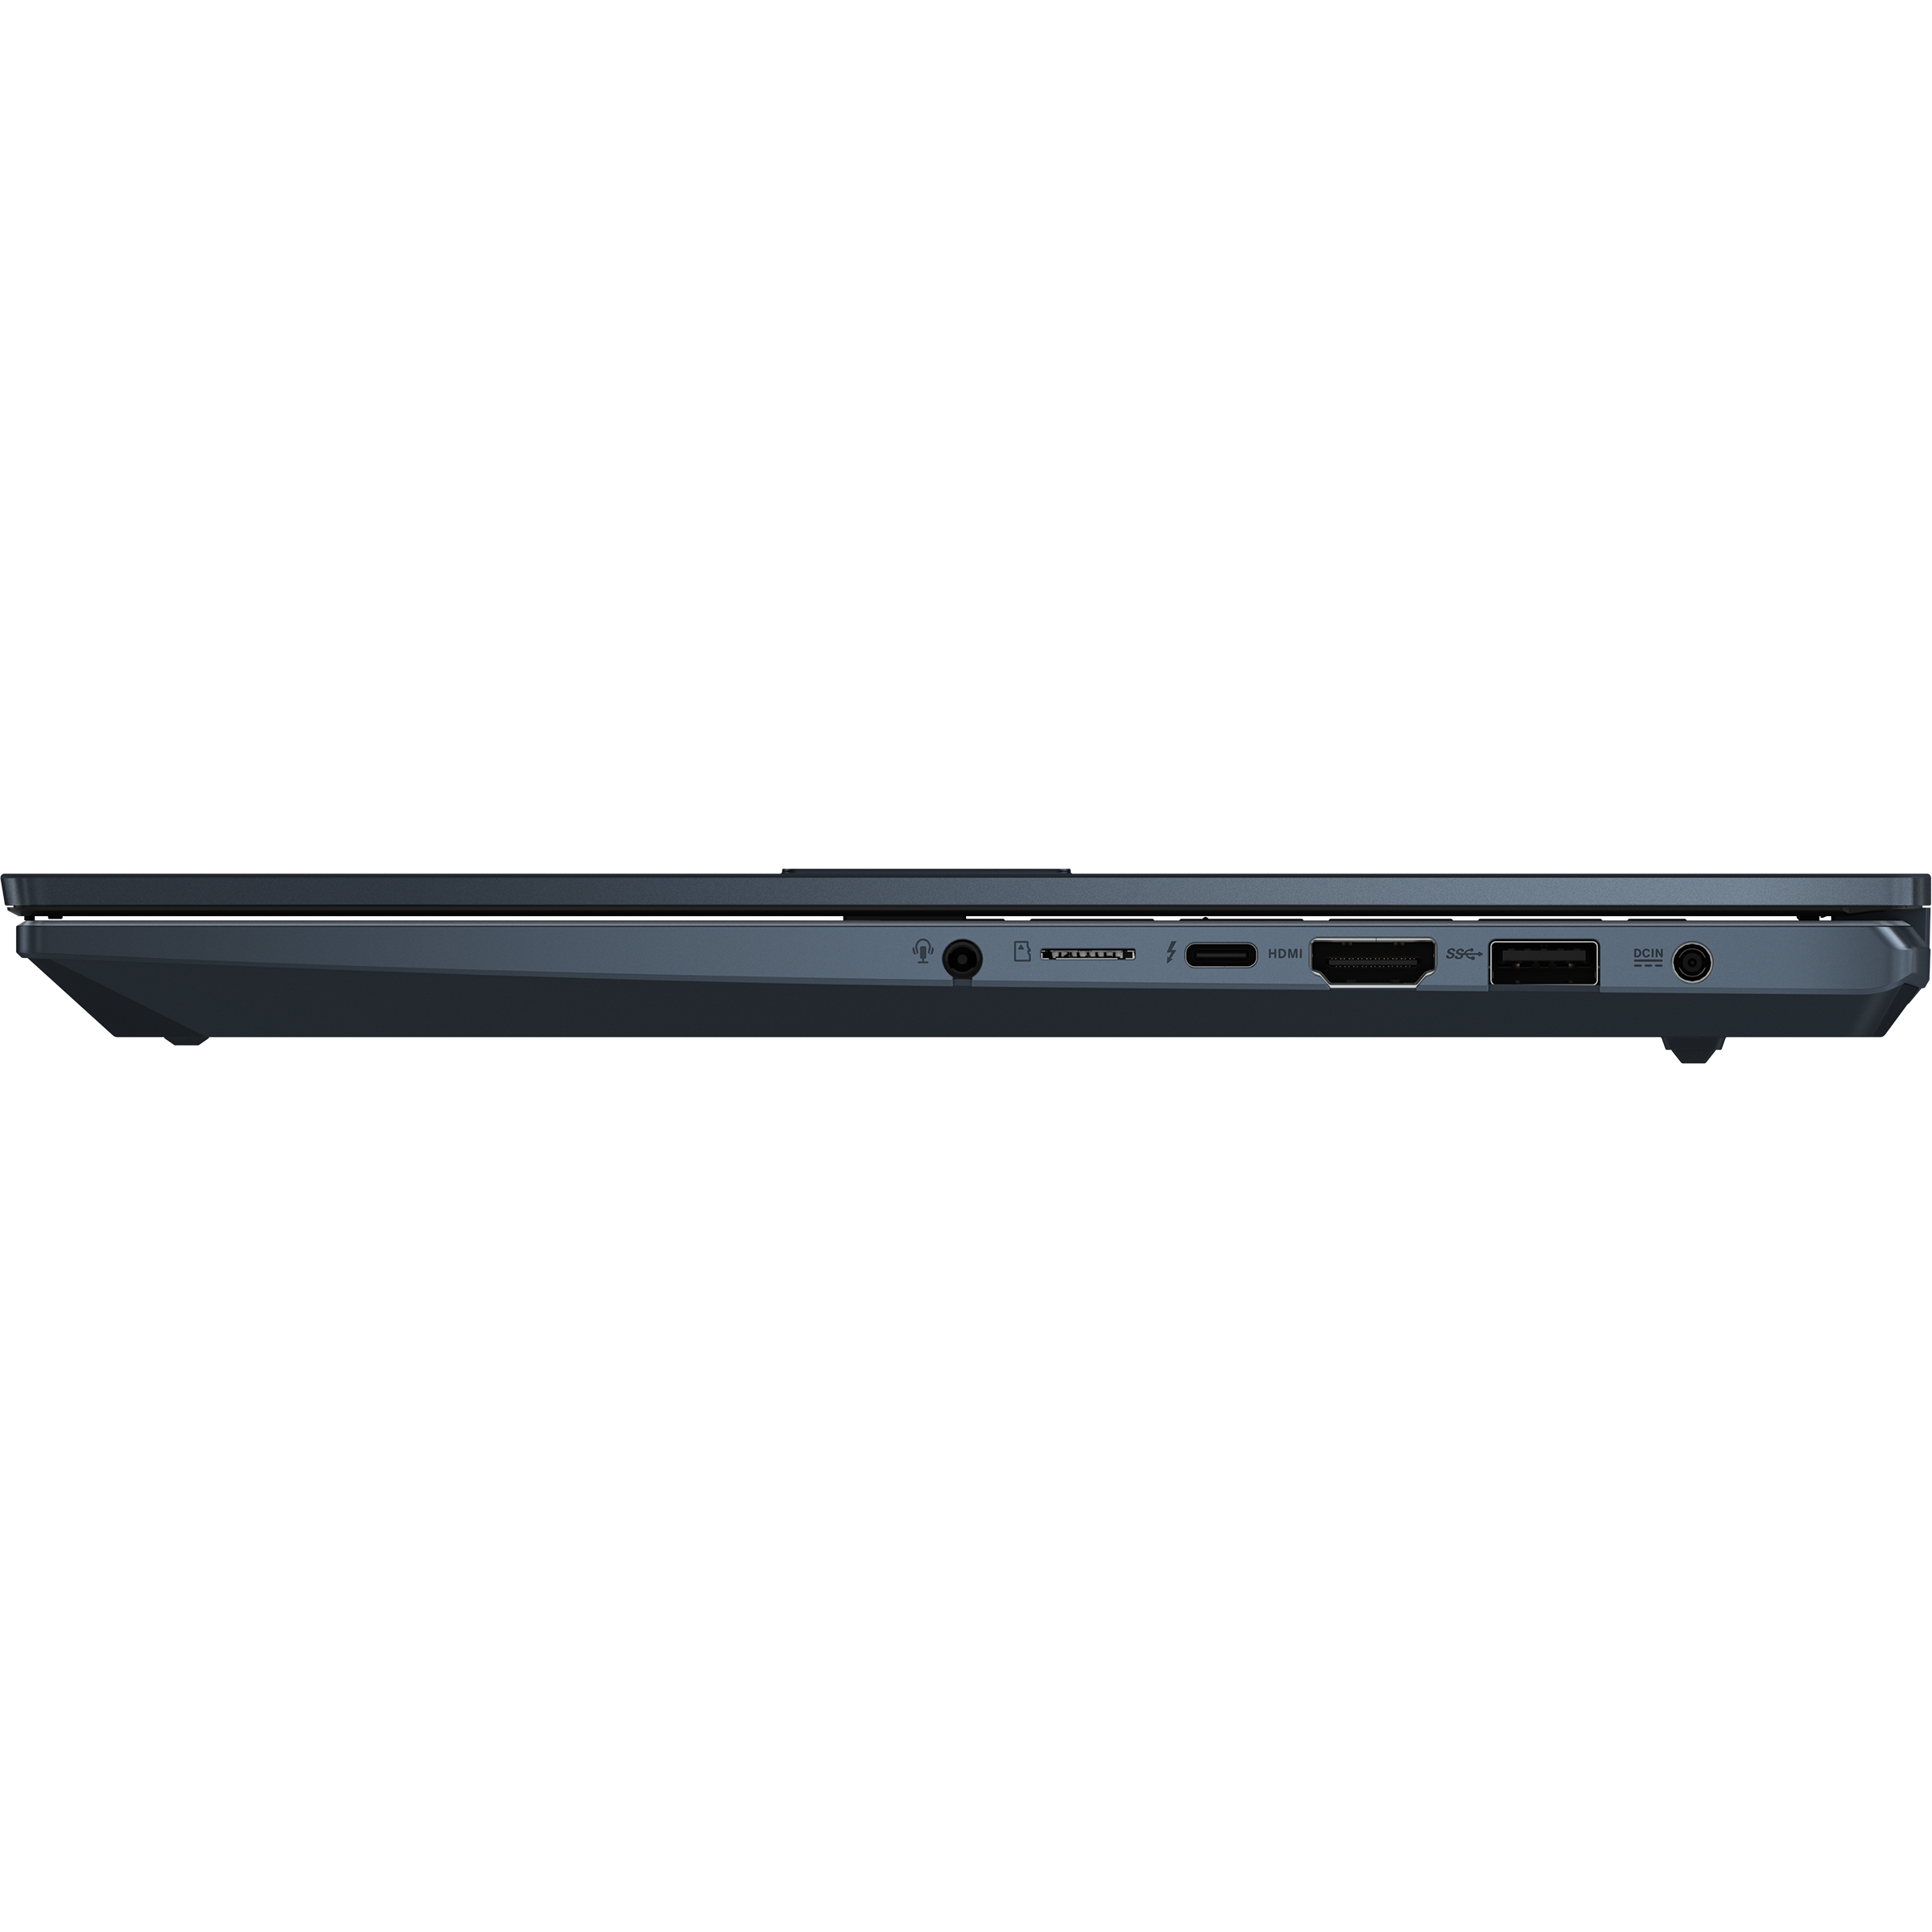 Vivobook Pro 15 OLED (K3500, 11th Gen Intel)